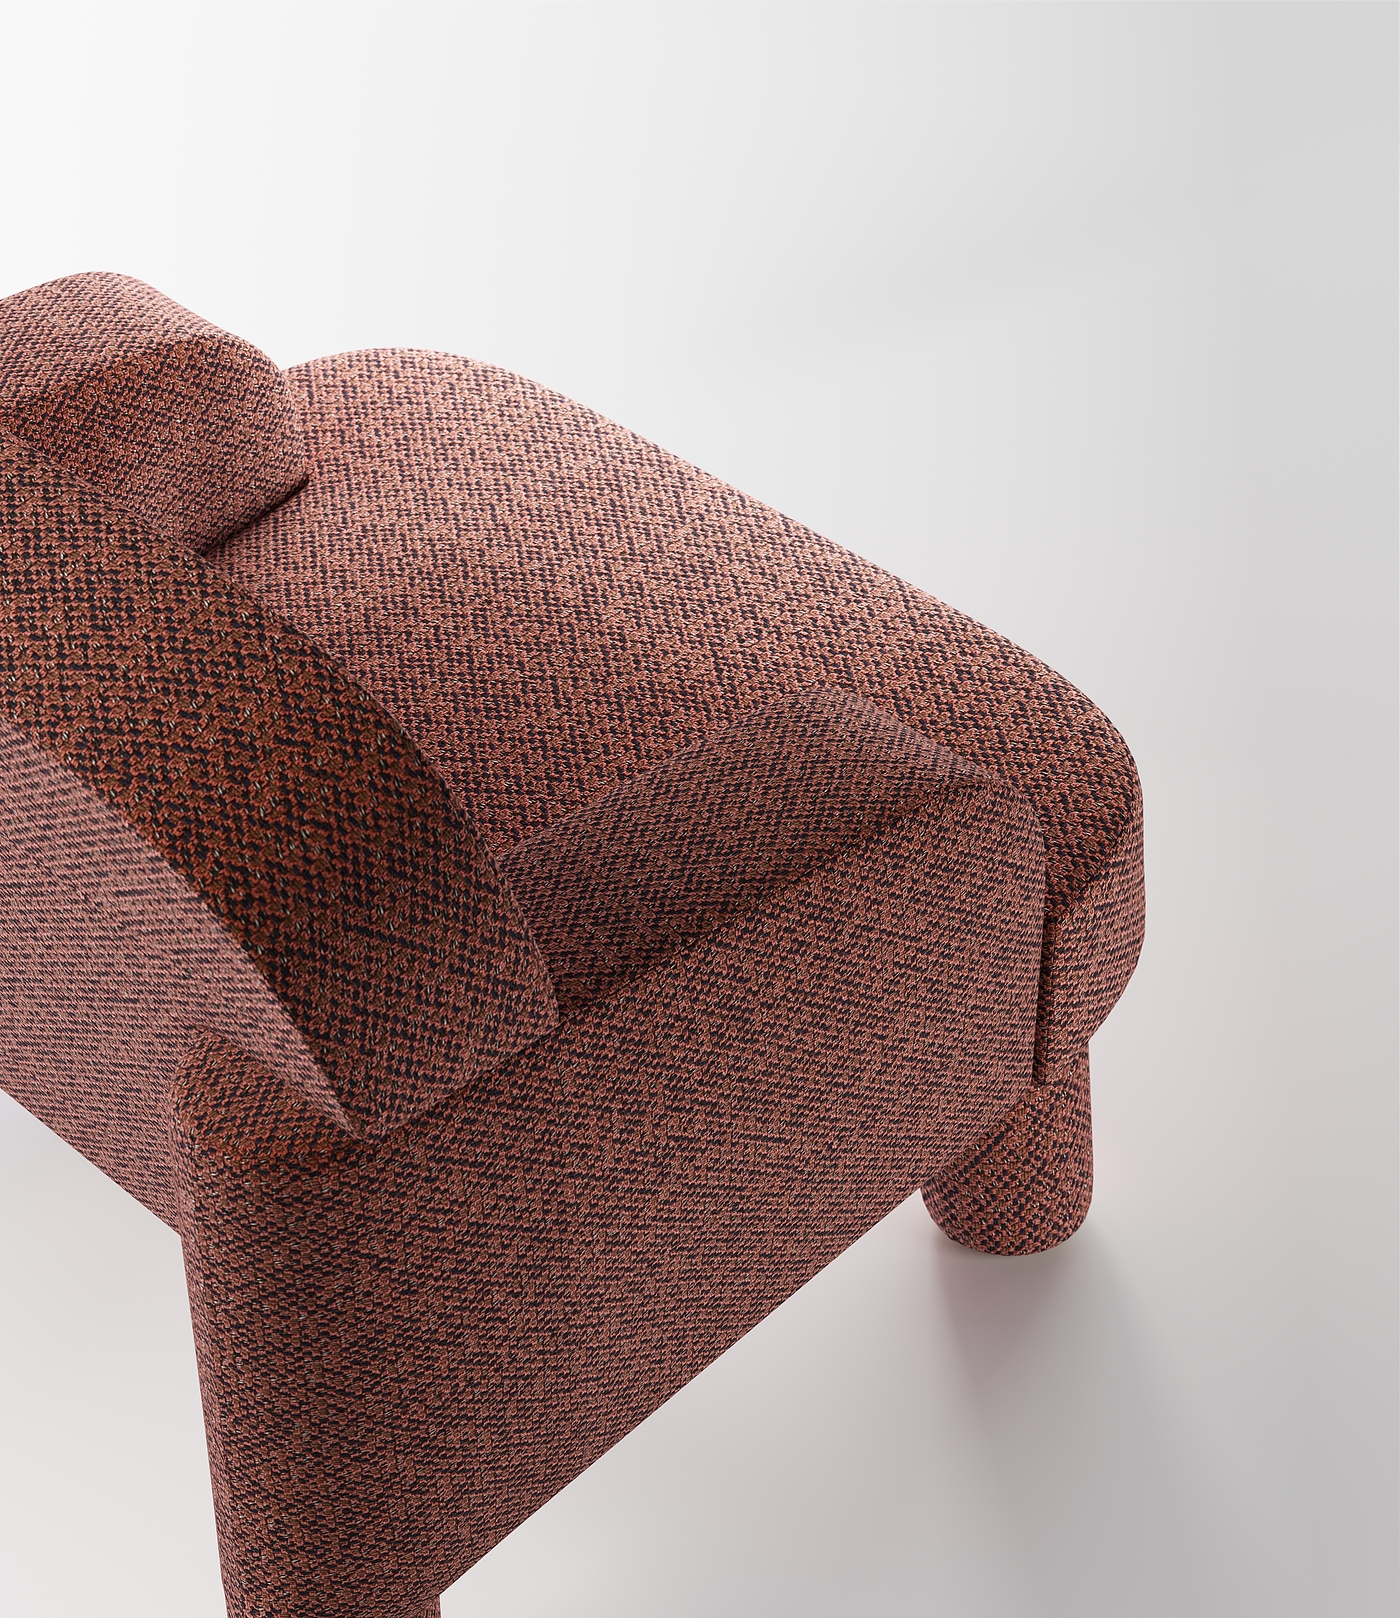 座椅，软垫，peel，产品设计，设计，产品，沙发，sofa，